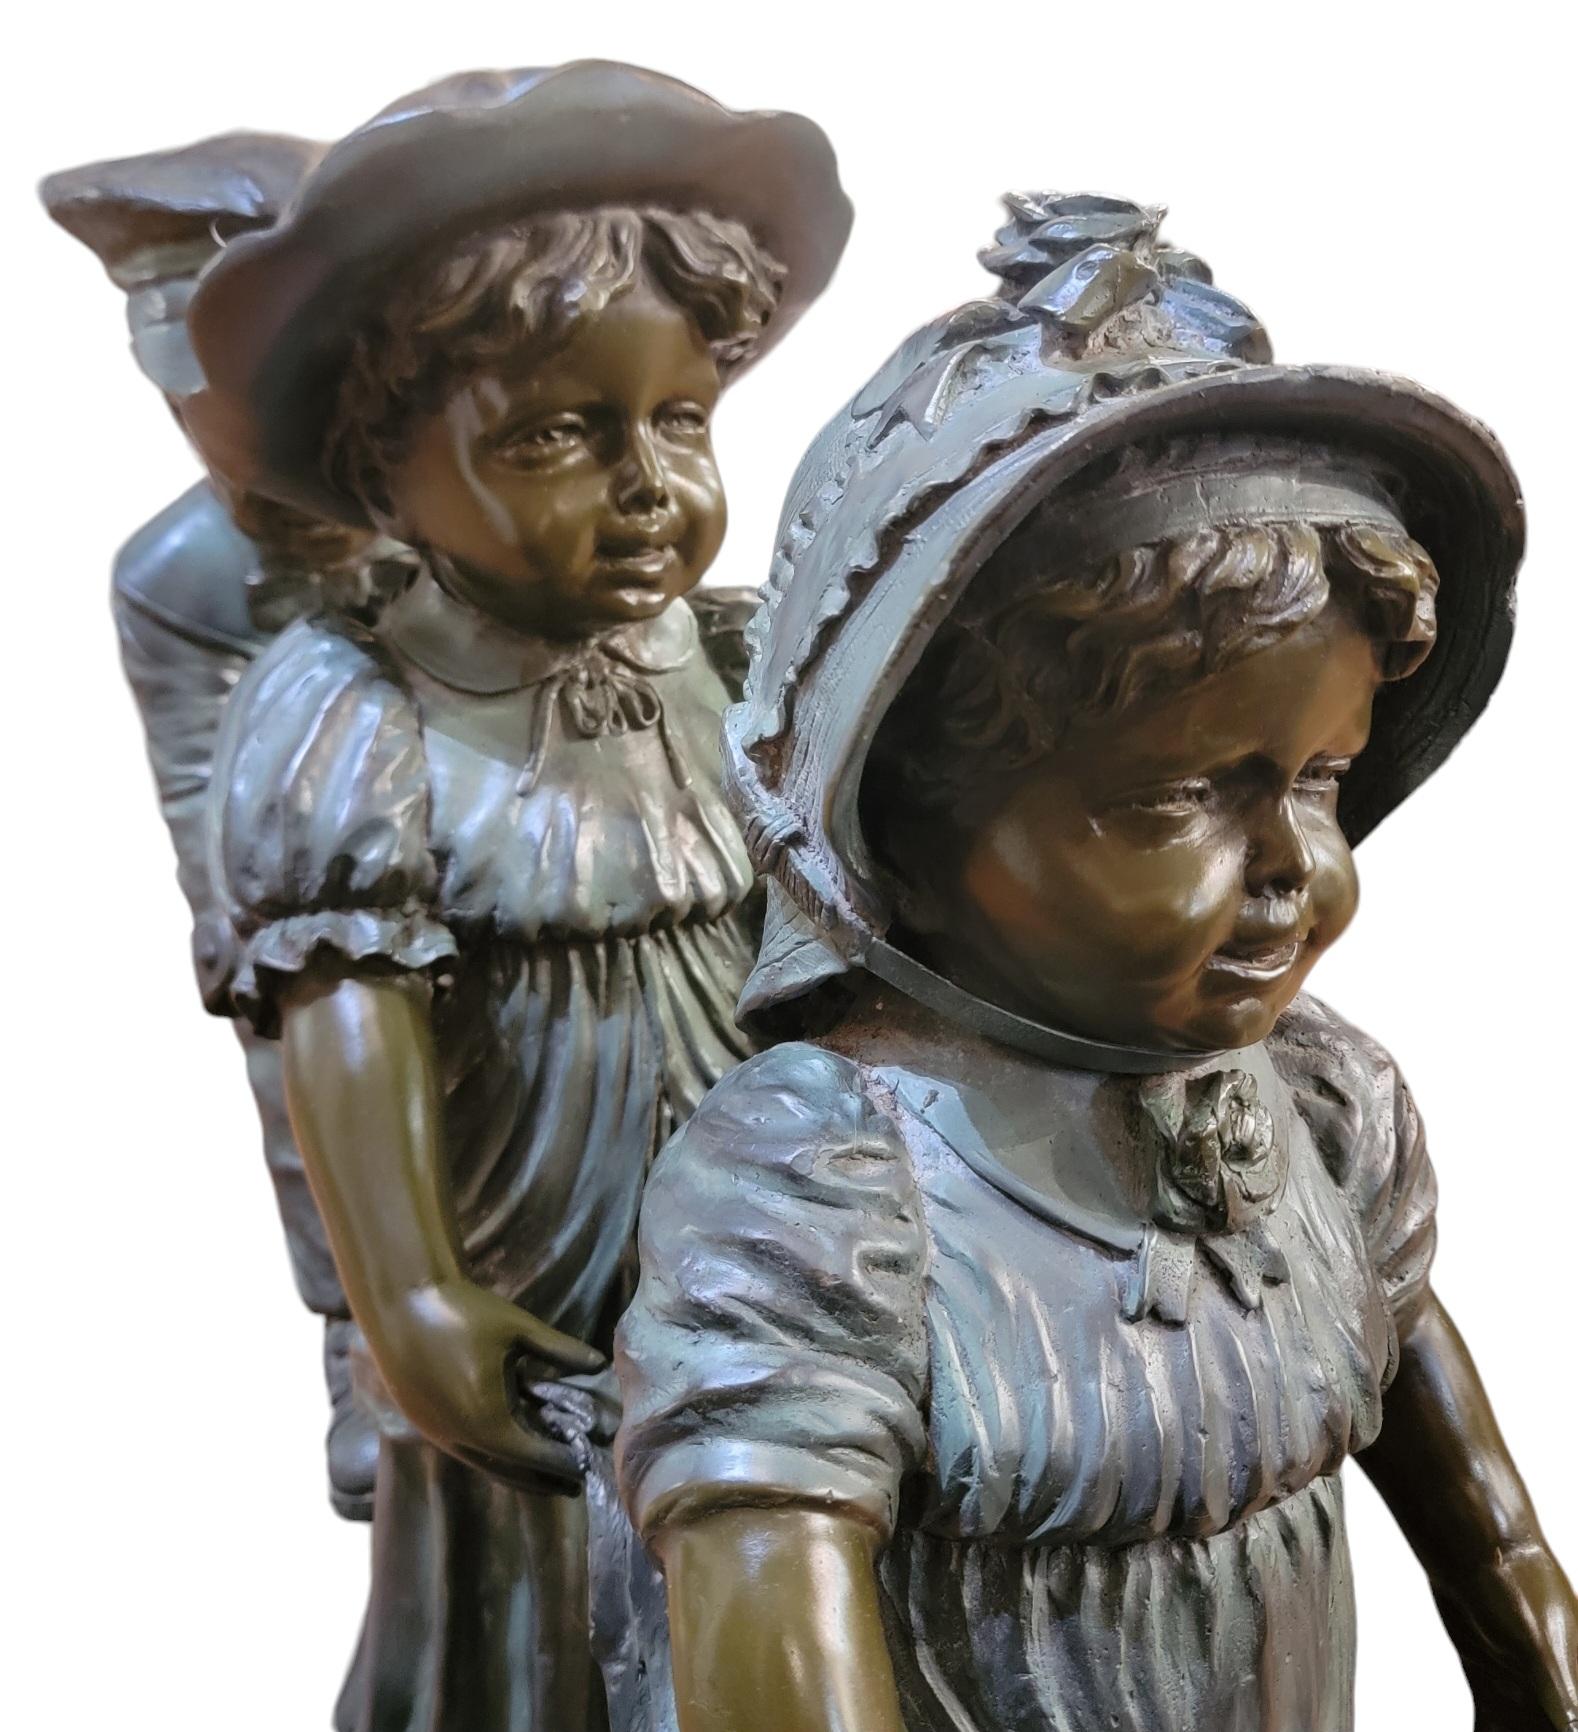 Drei spielende Kinder Statue Signiert. Diese verspielte Skulptur zeigt drei Kinder auf einem dicken Bronzesockel, der signiert ist. Die drei Kinder sind vom kleinsten bis zum größten, das kleinste steht vorne. Möglicherweise eine Hochzeitsszene, bei